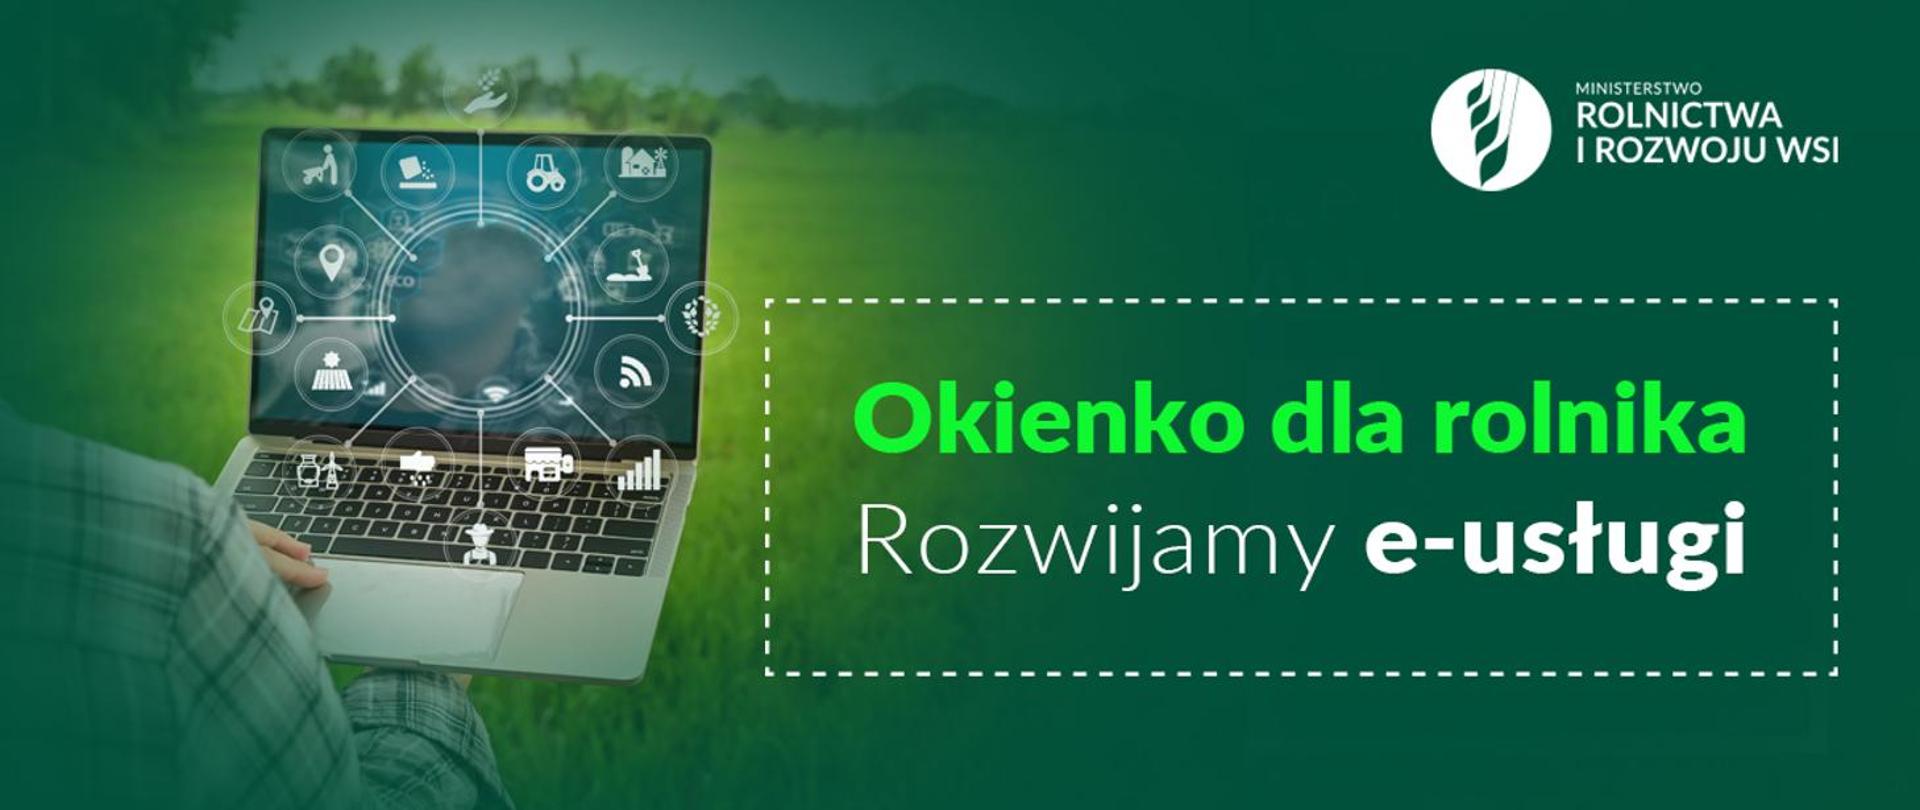 W dniu 29.12.2021 r. na portalu Gov.pl, uruchomiona została osobna podstrona poświęcona działaniom na rzecz rolników w ramach tzw. „Okienka dla rolnika”. 